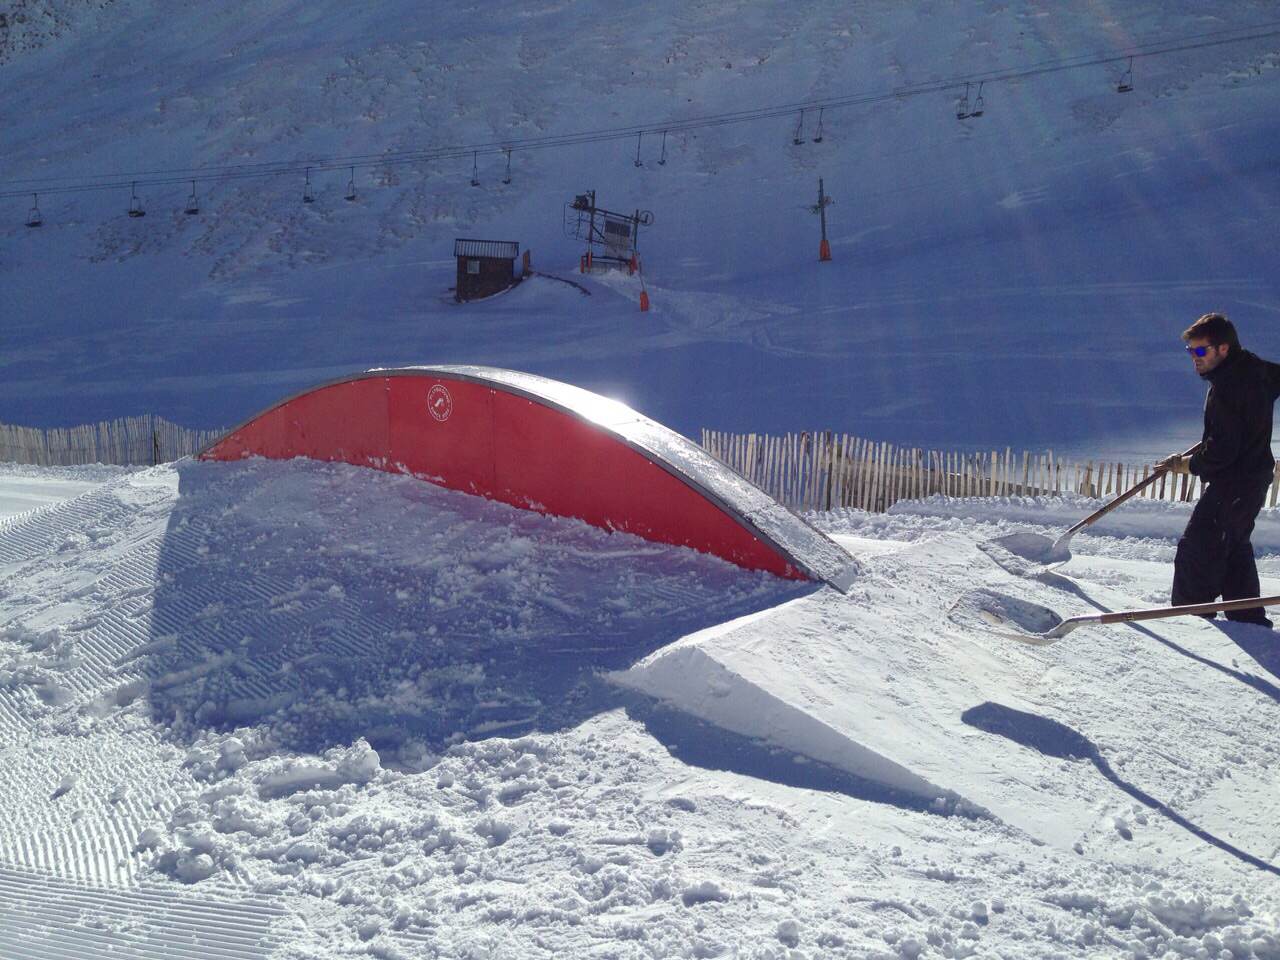 Vallnord Arinsal inauguró el snowpark el pasado viernes, el primero del Pirineo en abrir